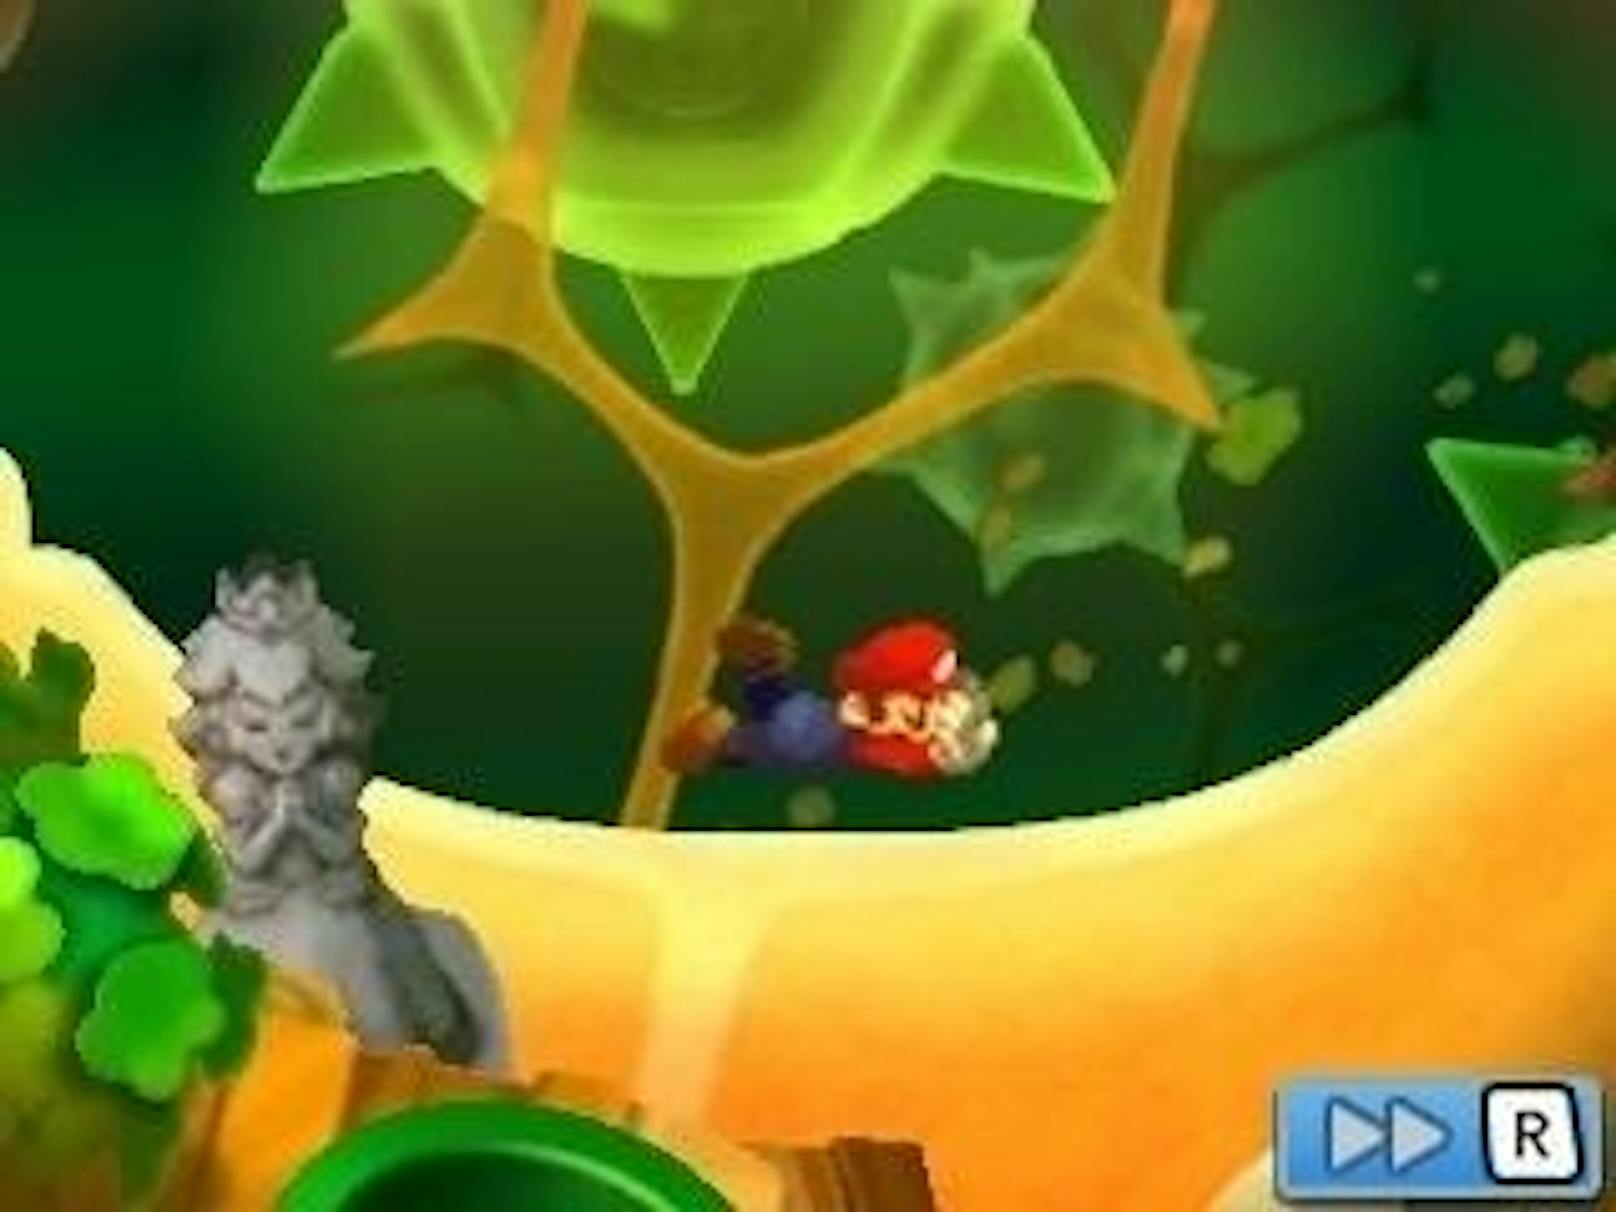 Das aktuell erschienene Remake "Mario & Luigi: Abenteuer Bowser + Bowser Jr.s Reise" beweist am Nintendo 3DS, dass Aufgewärmtes doch schmecken kann.